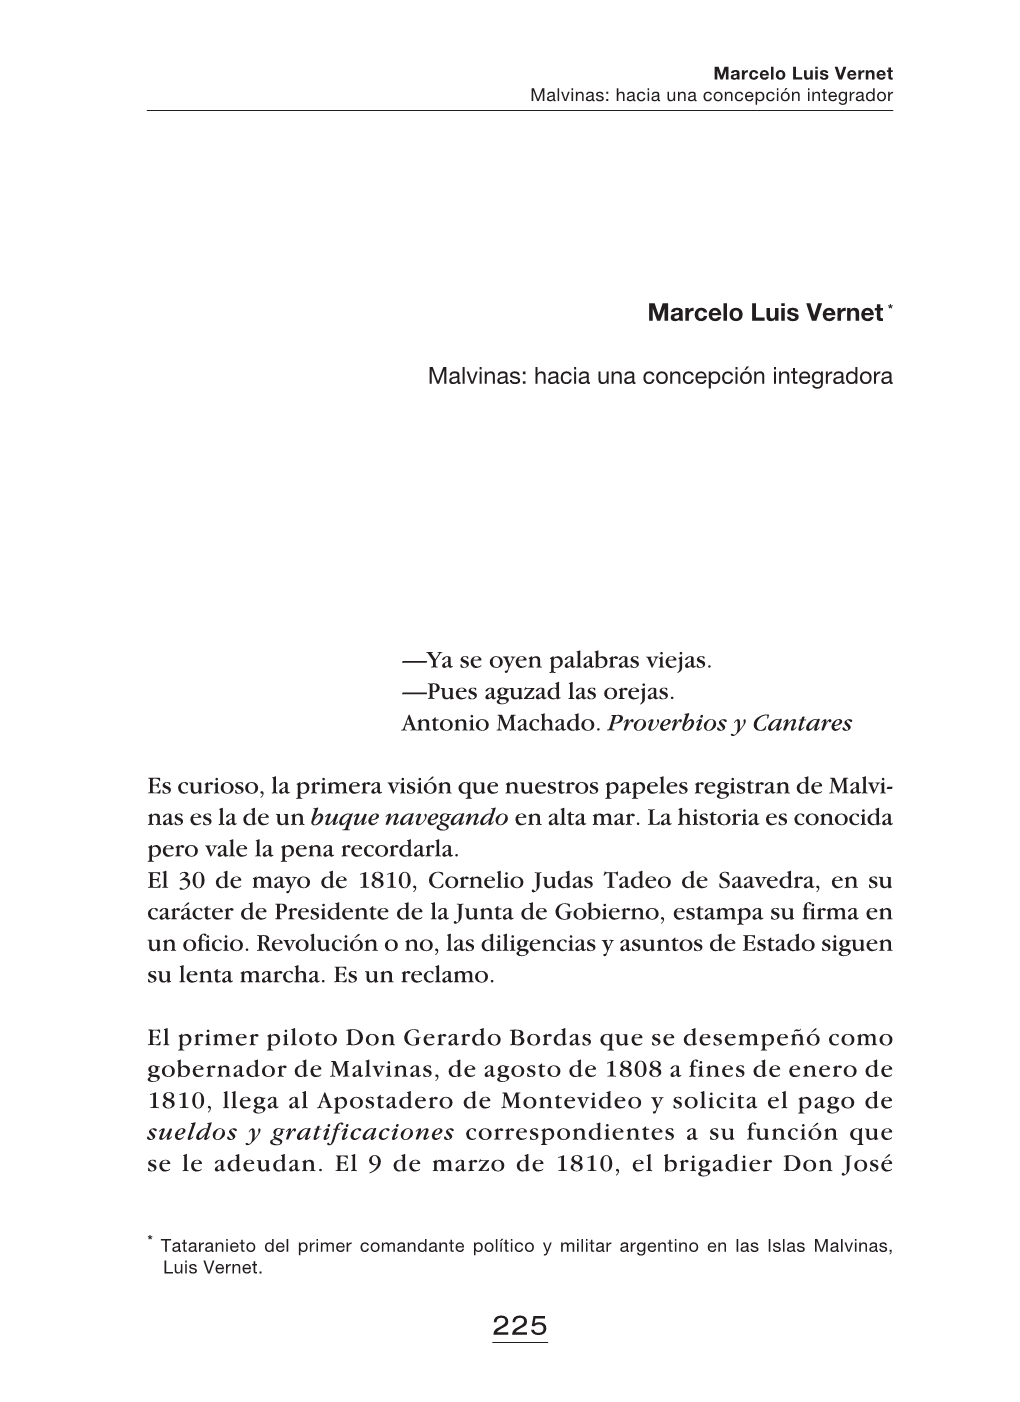 Marcelo Luis Vernet Malvinas: Hacia Una Concepción Integrador